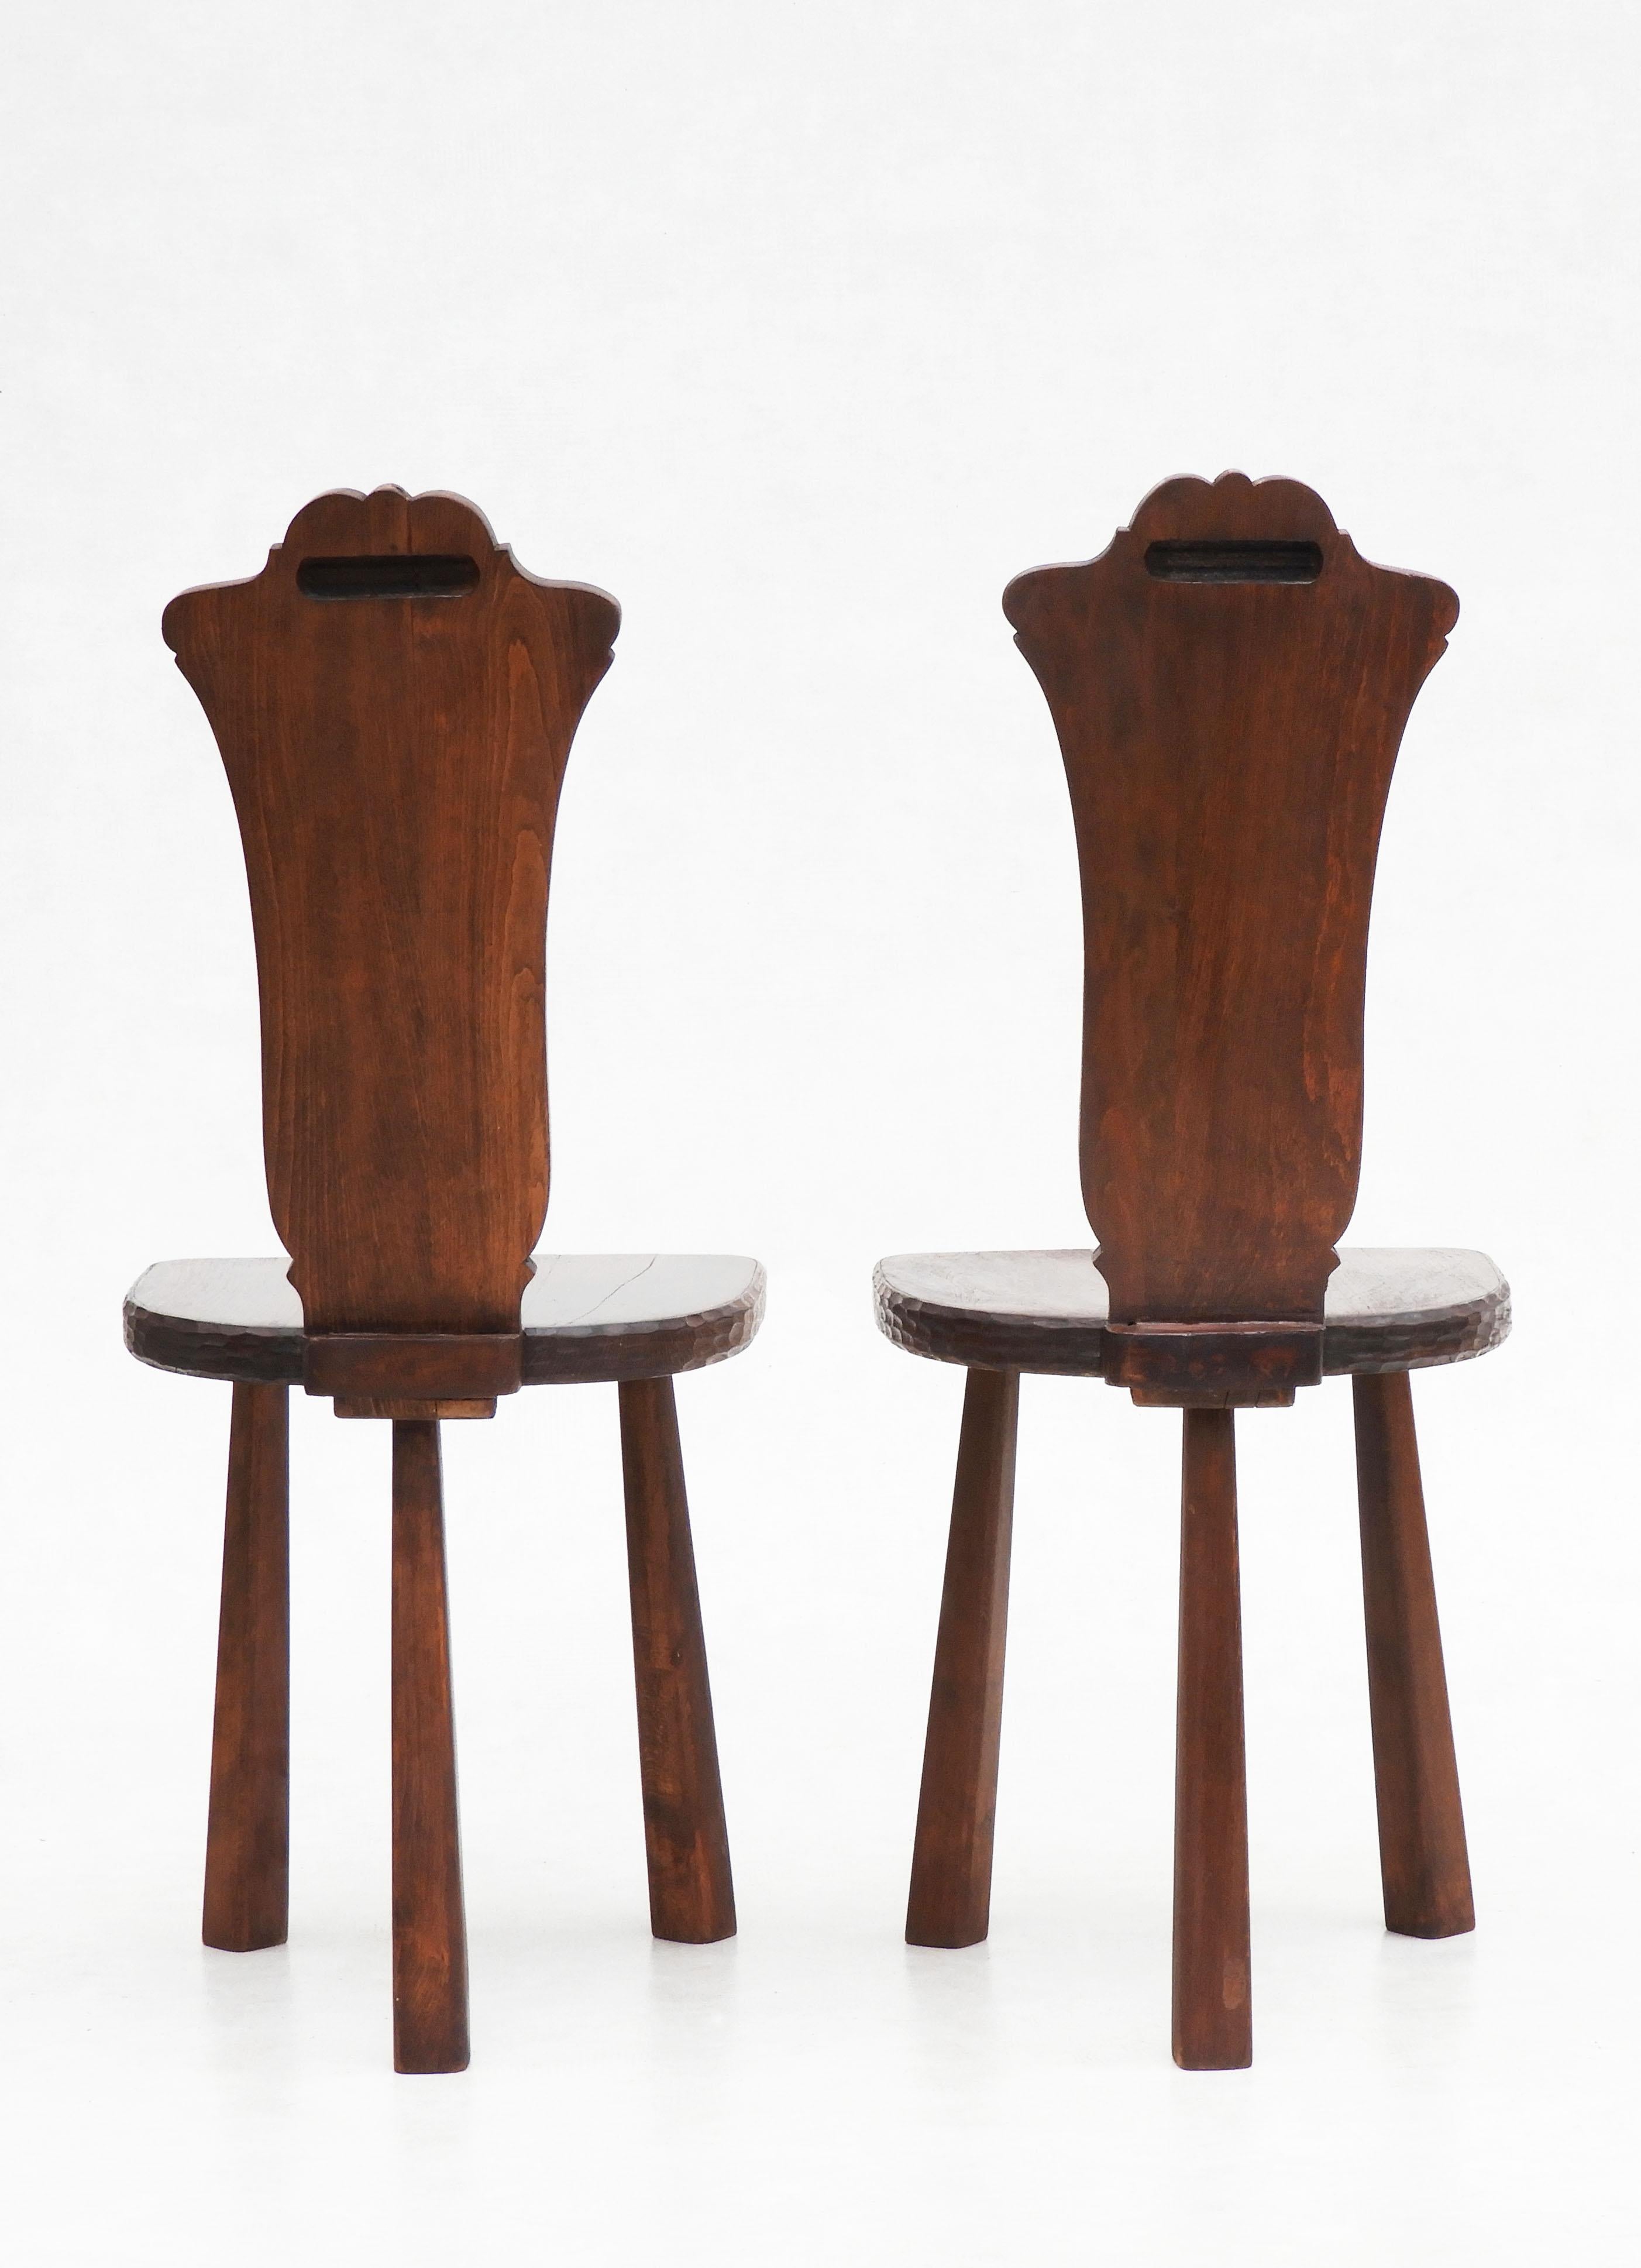 Pair of Basque Tripod Chairs 1950s European Folk Art For Sale 1